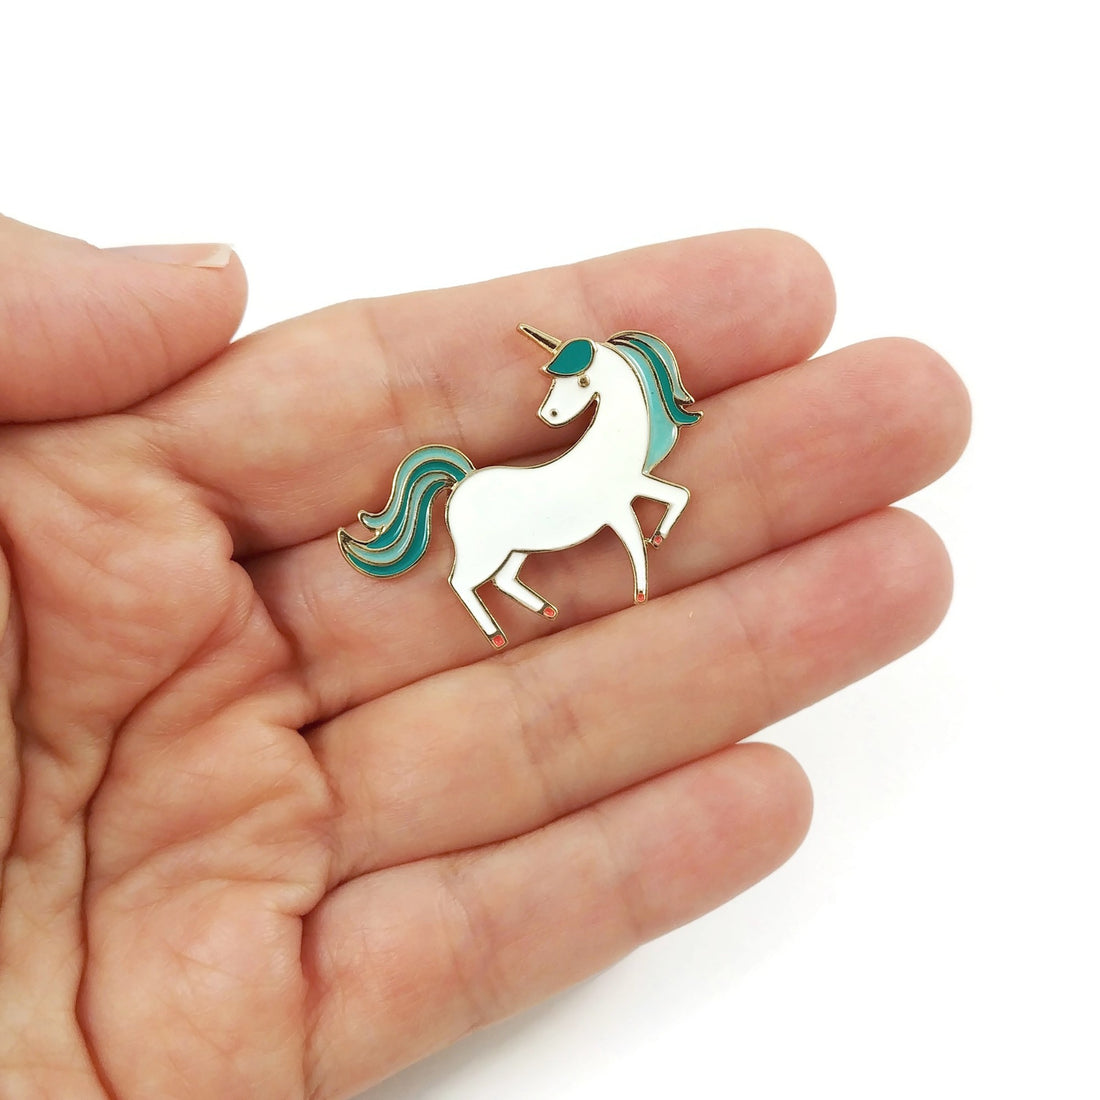 Unicorn enamel pin, little brooch for unicorn lover